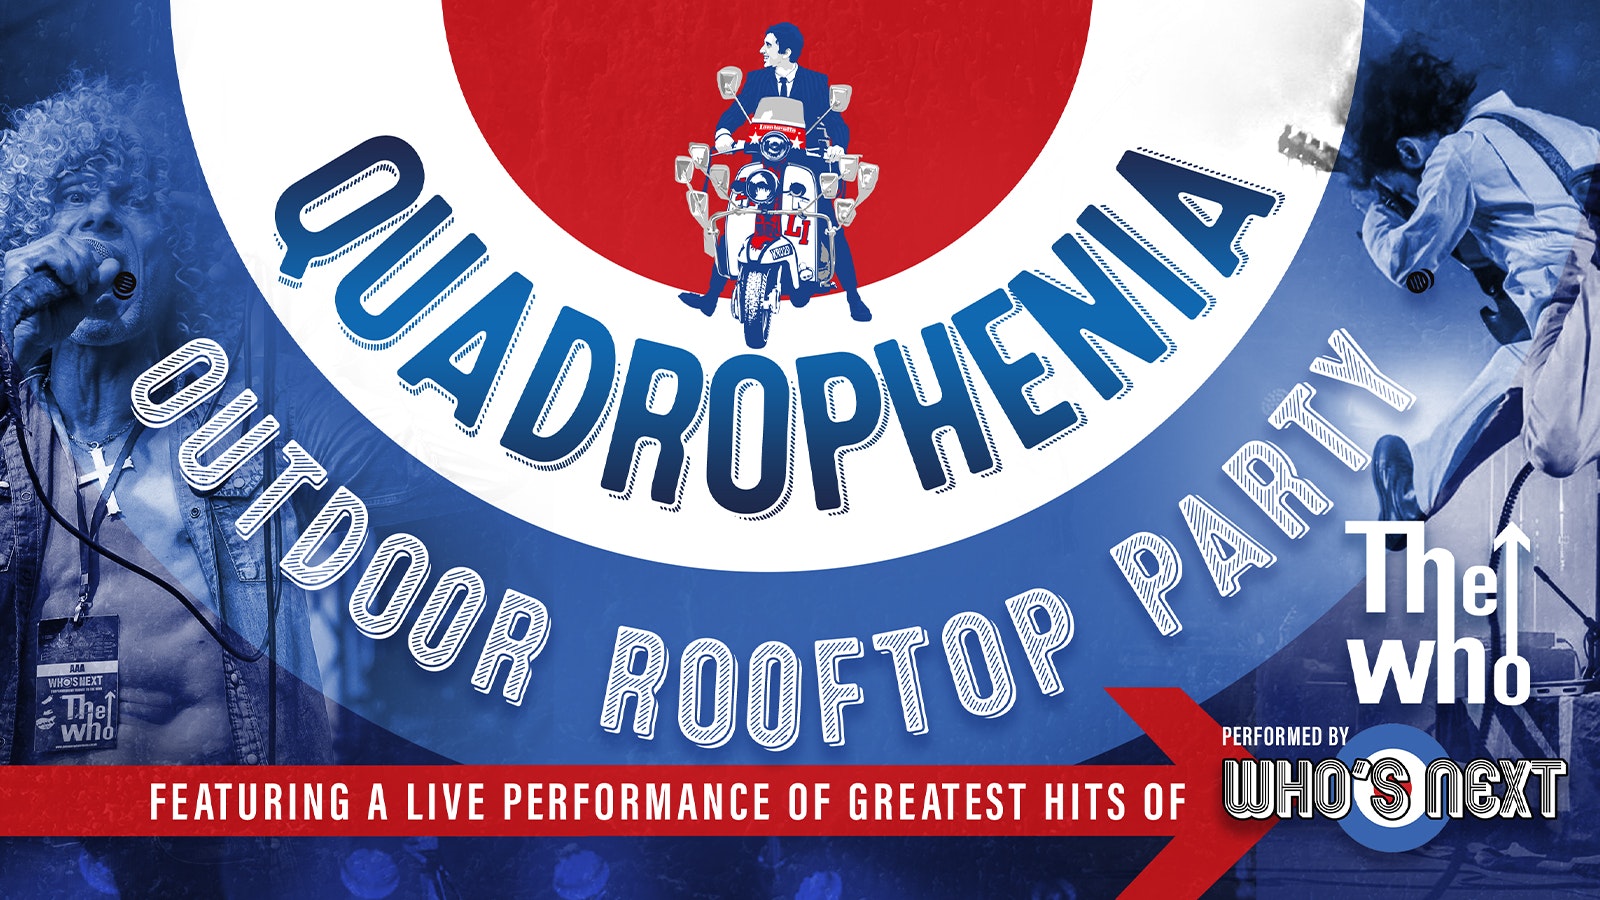 🔴🔵⚪️ Quadrophenia Outdoor Rooftop Fest